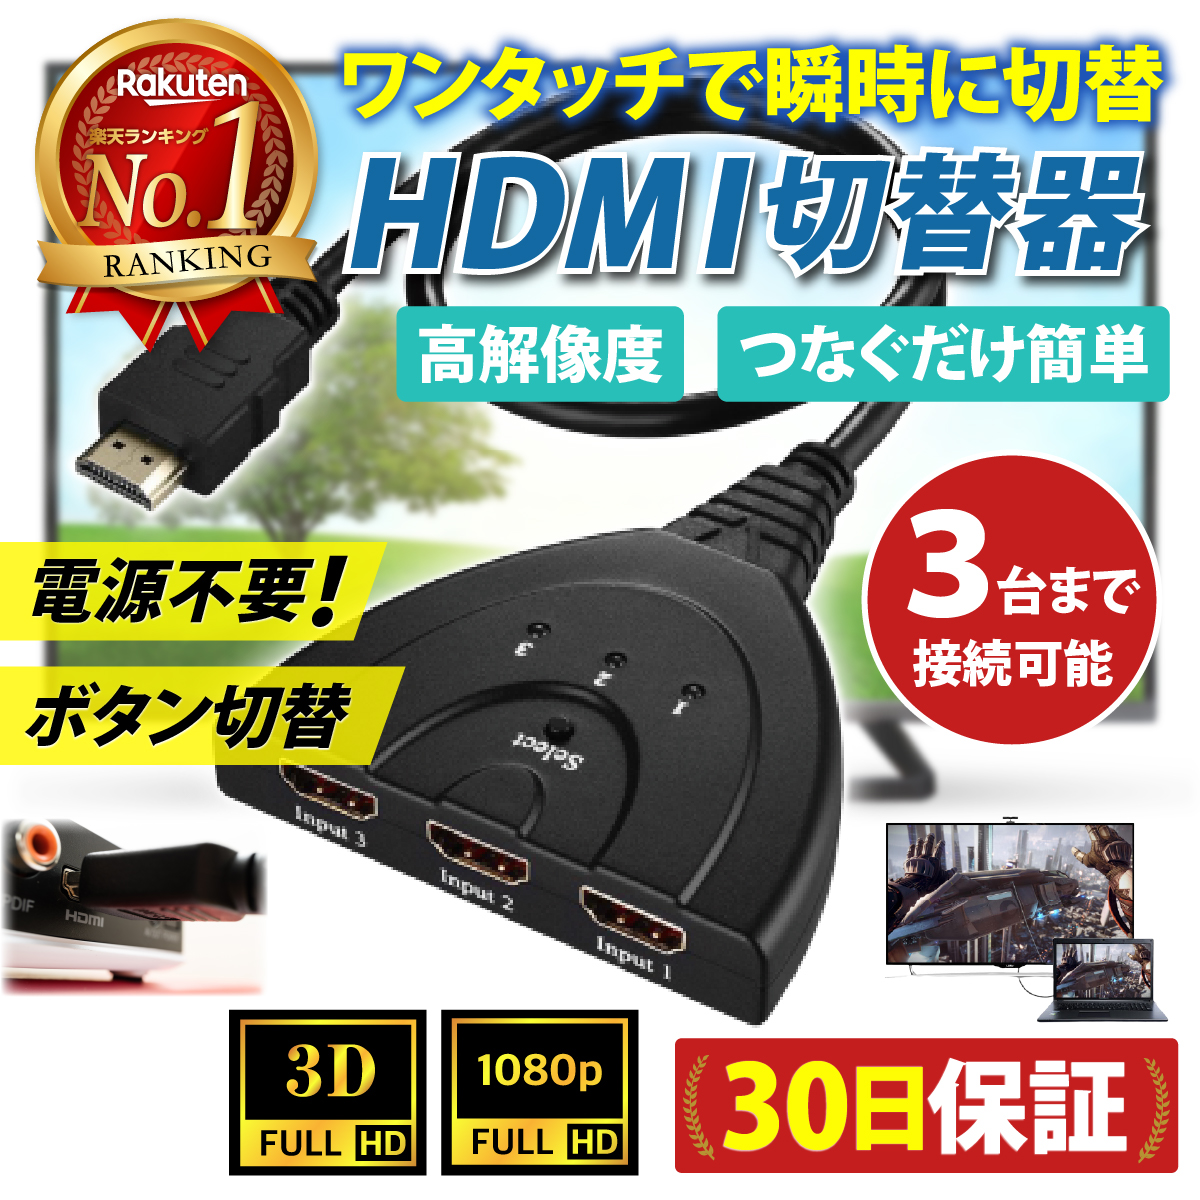 HDMI переключатель дистрибьютор селектор 3 ввод 1 мощность полный HD ручной переключатель женский - мужской адаптор дисплей монитор 3D изображение 